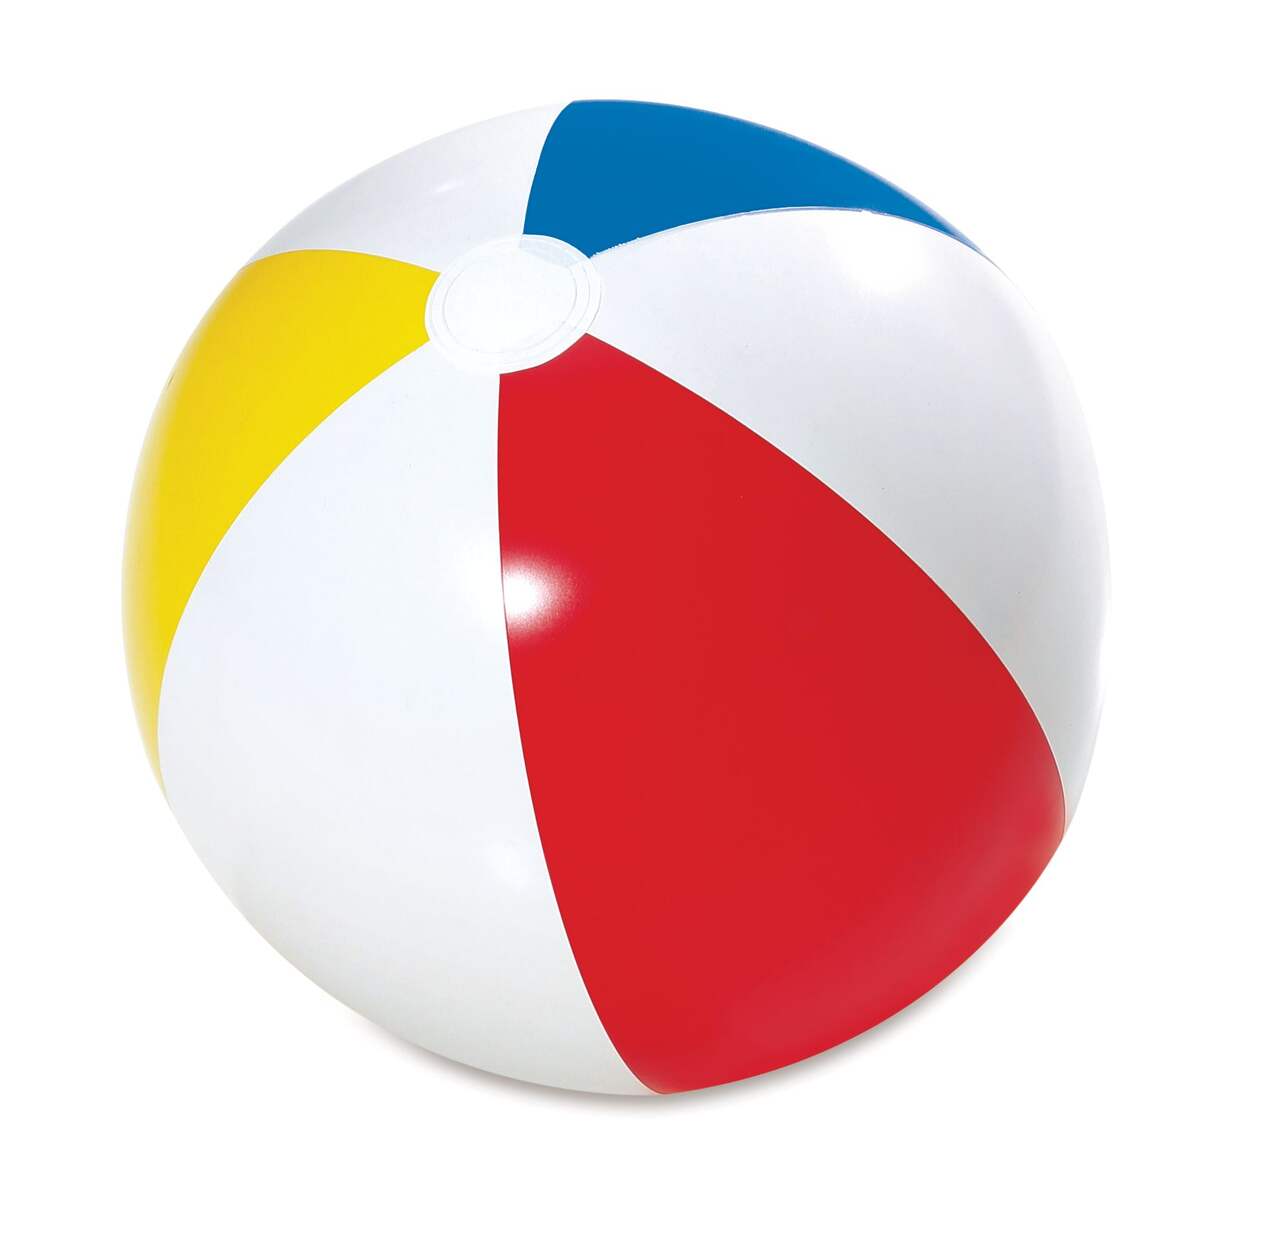 24 « / 16 » Grand ballon de plage gonflable à paillettes pour la fête de la  piscine de plage d’été